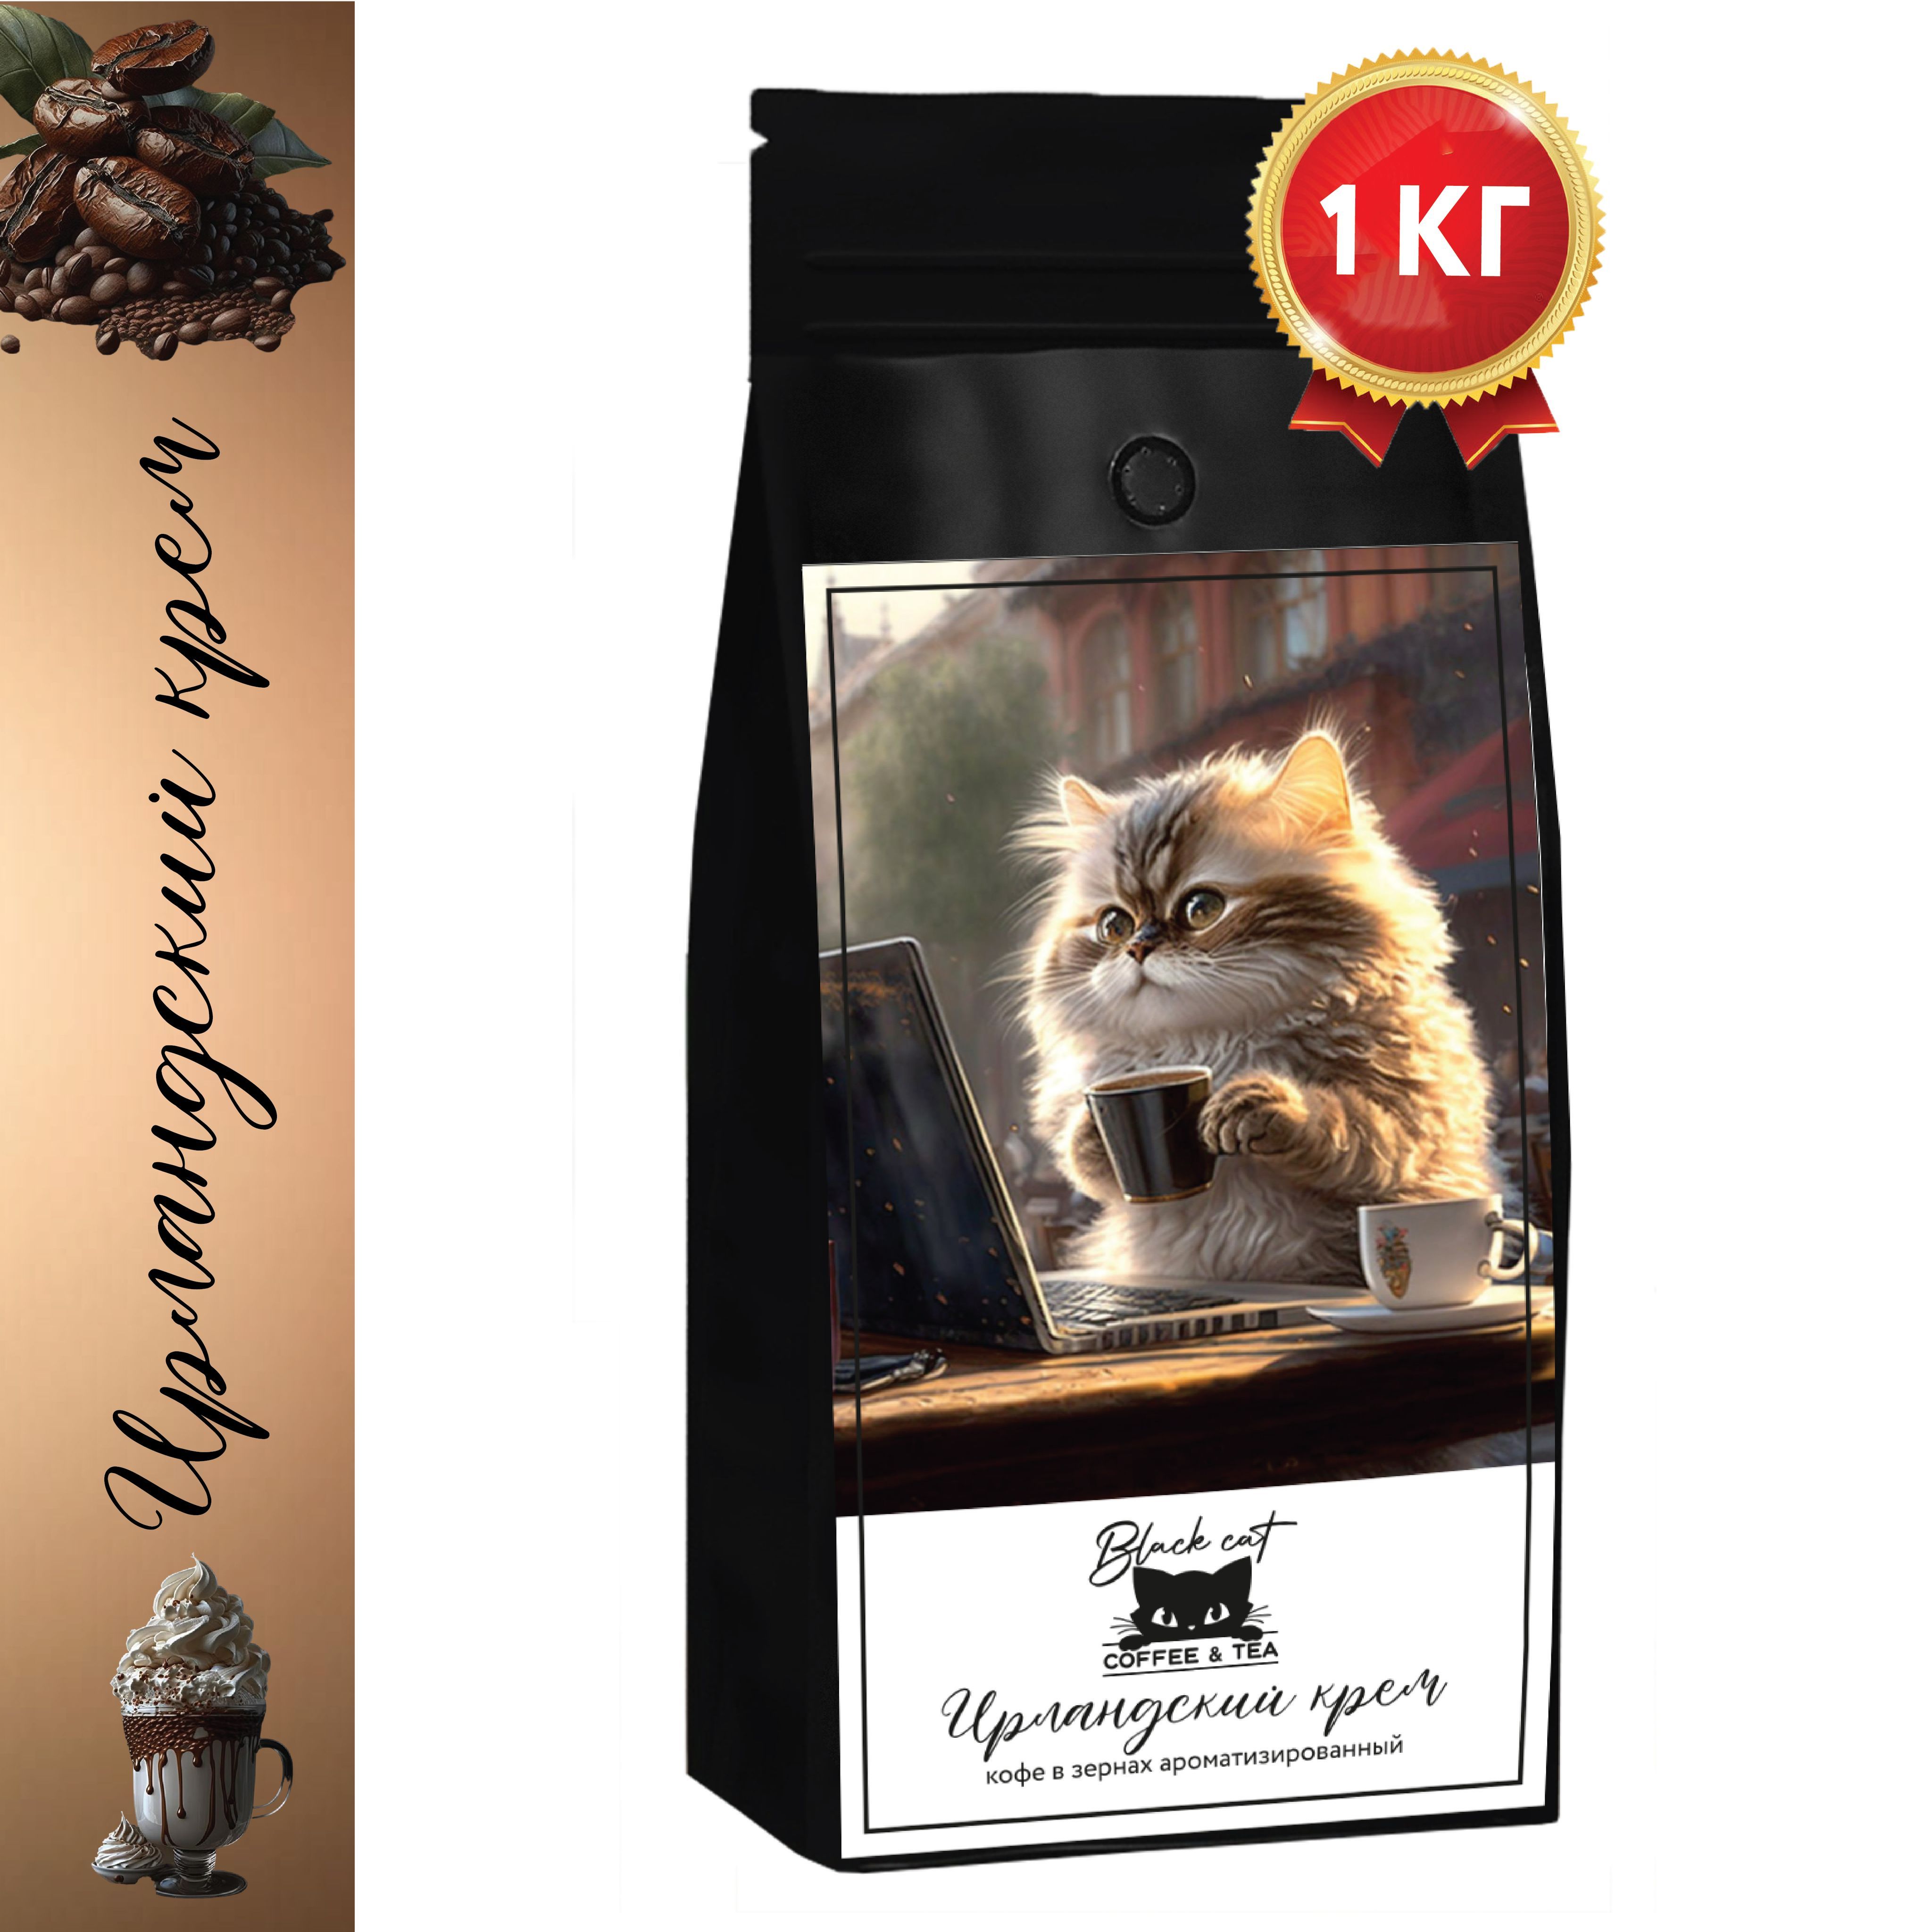 Правдивая история Копи Лювак: почему кофе, добытый из кошачьего помета — это дрянь